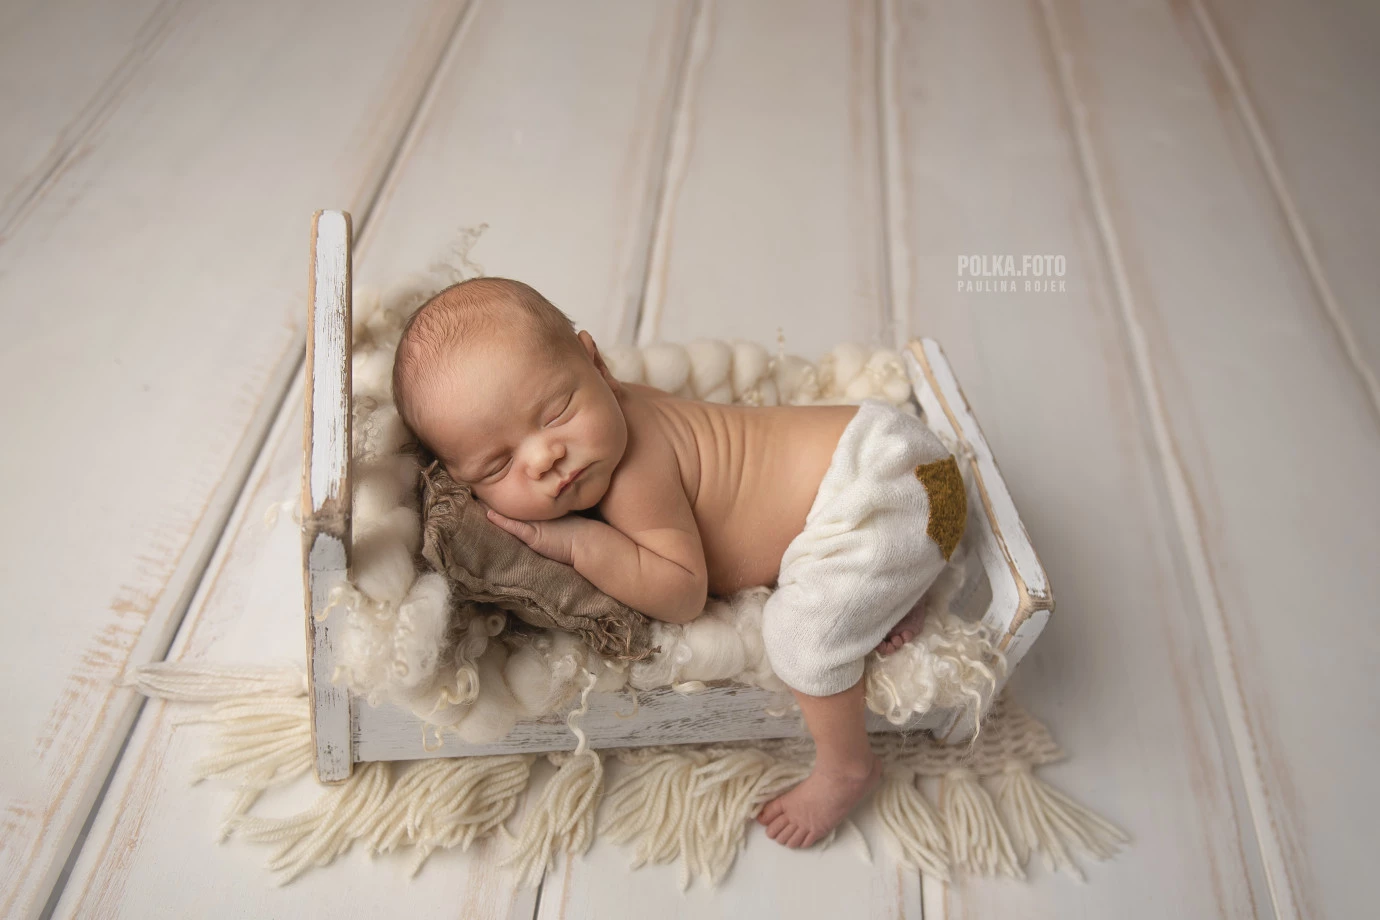 zdjęcia tarnow fotograf polkafoto-paulina-rojek portfolio zdjecia noworodkow sesje noworodkowe niemowlę